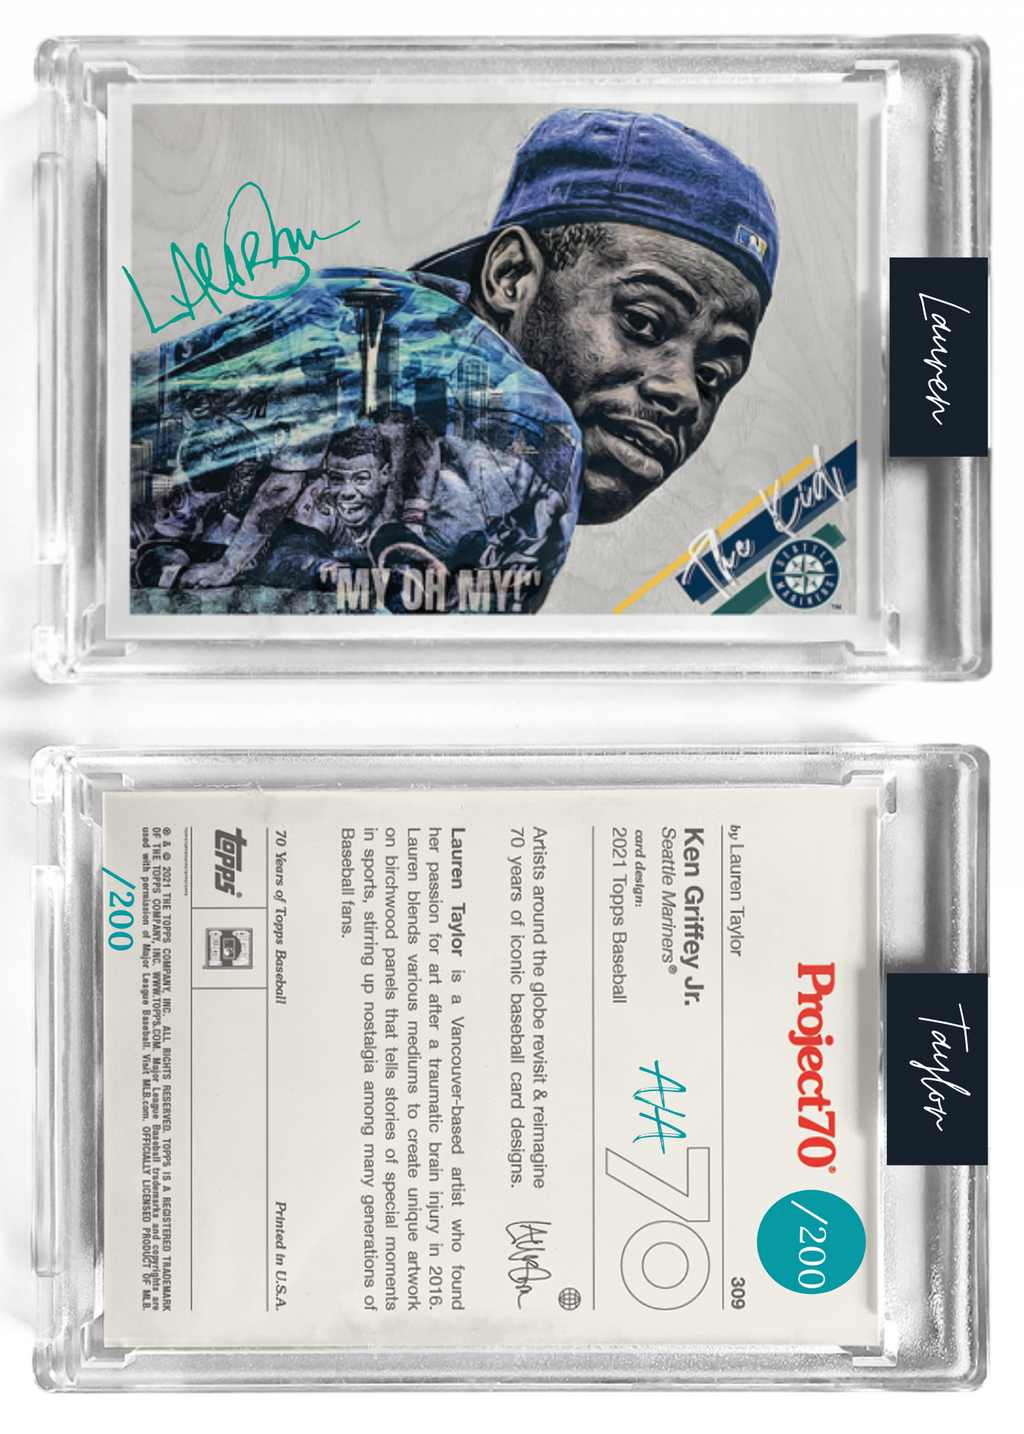 /200 Teal Artist Signature - Ken Griffey Jr. - 130pt Card #309 by Lauren Taylor - Baseball Card